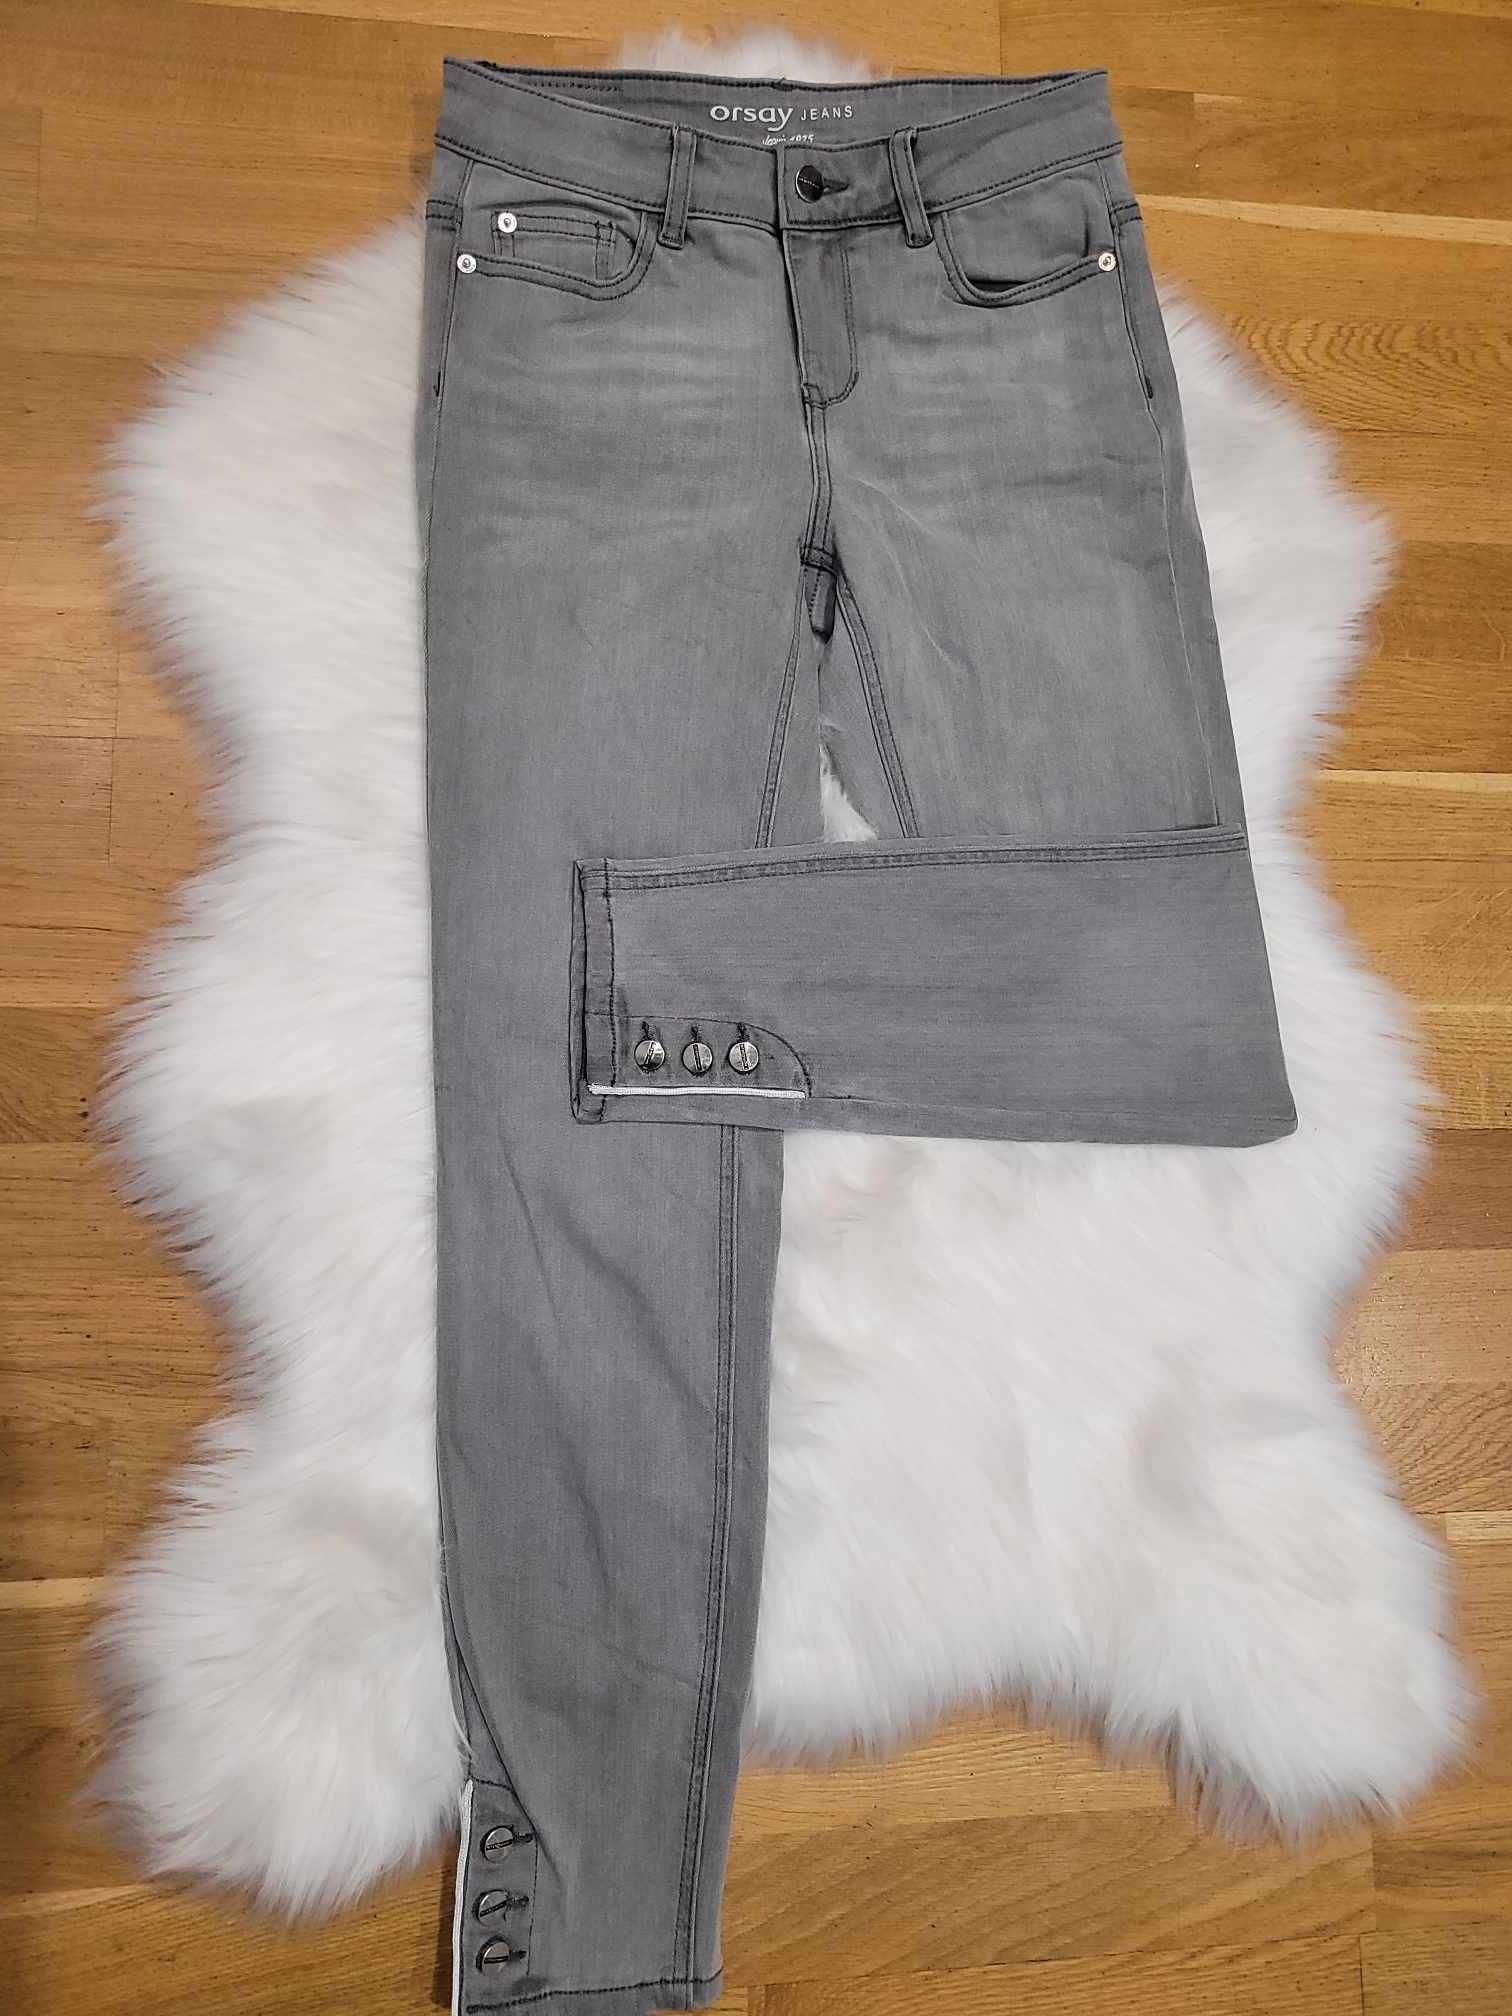 Stylowe Spodnie Damskie OrsayJeans-Twoja Nowa Ulubiona Część Garderoby